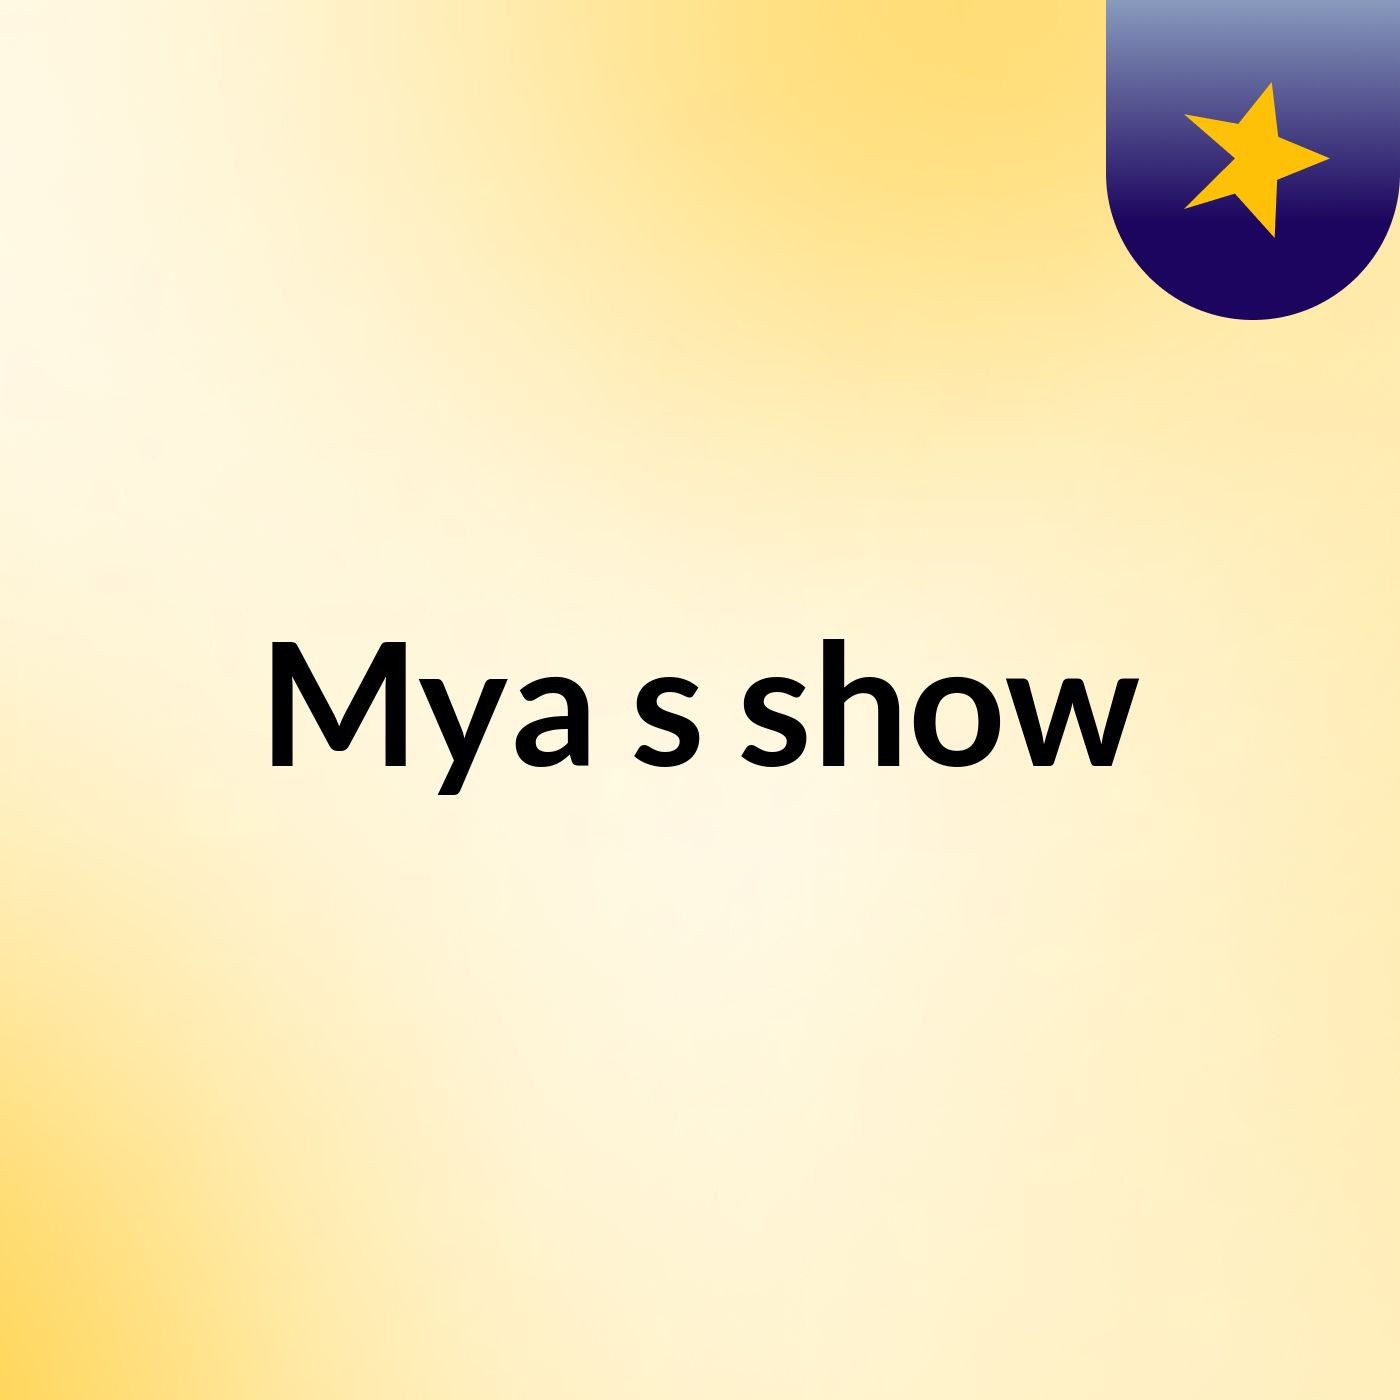 Mya's show